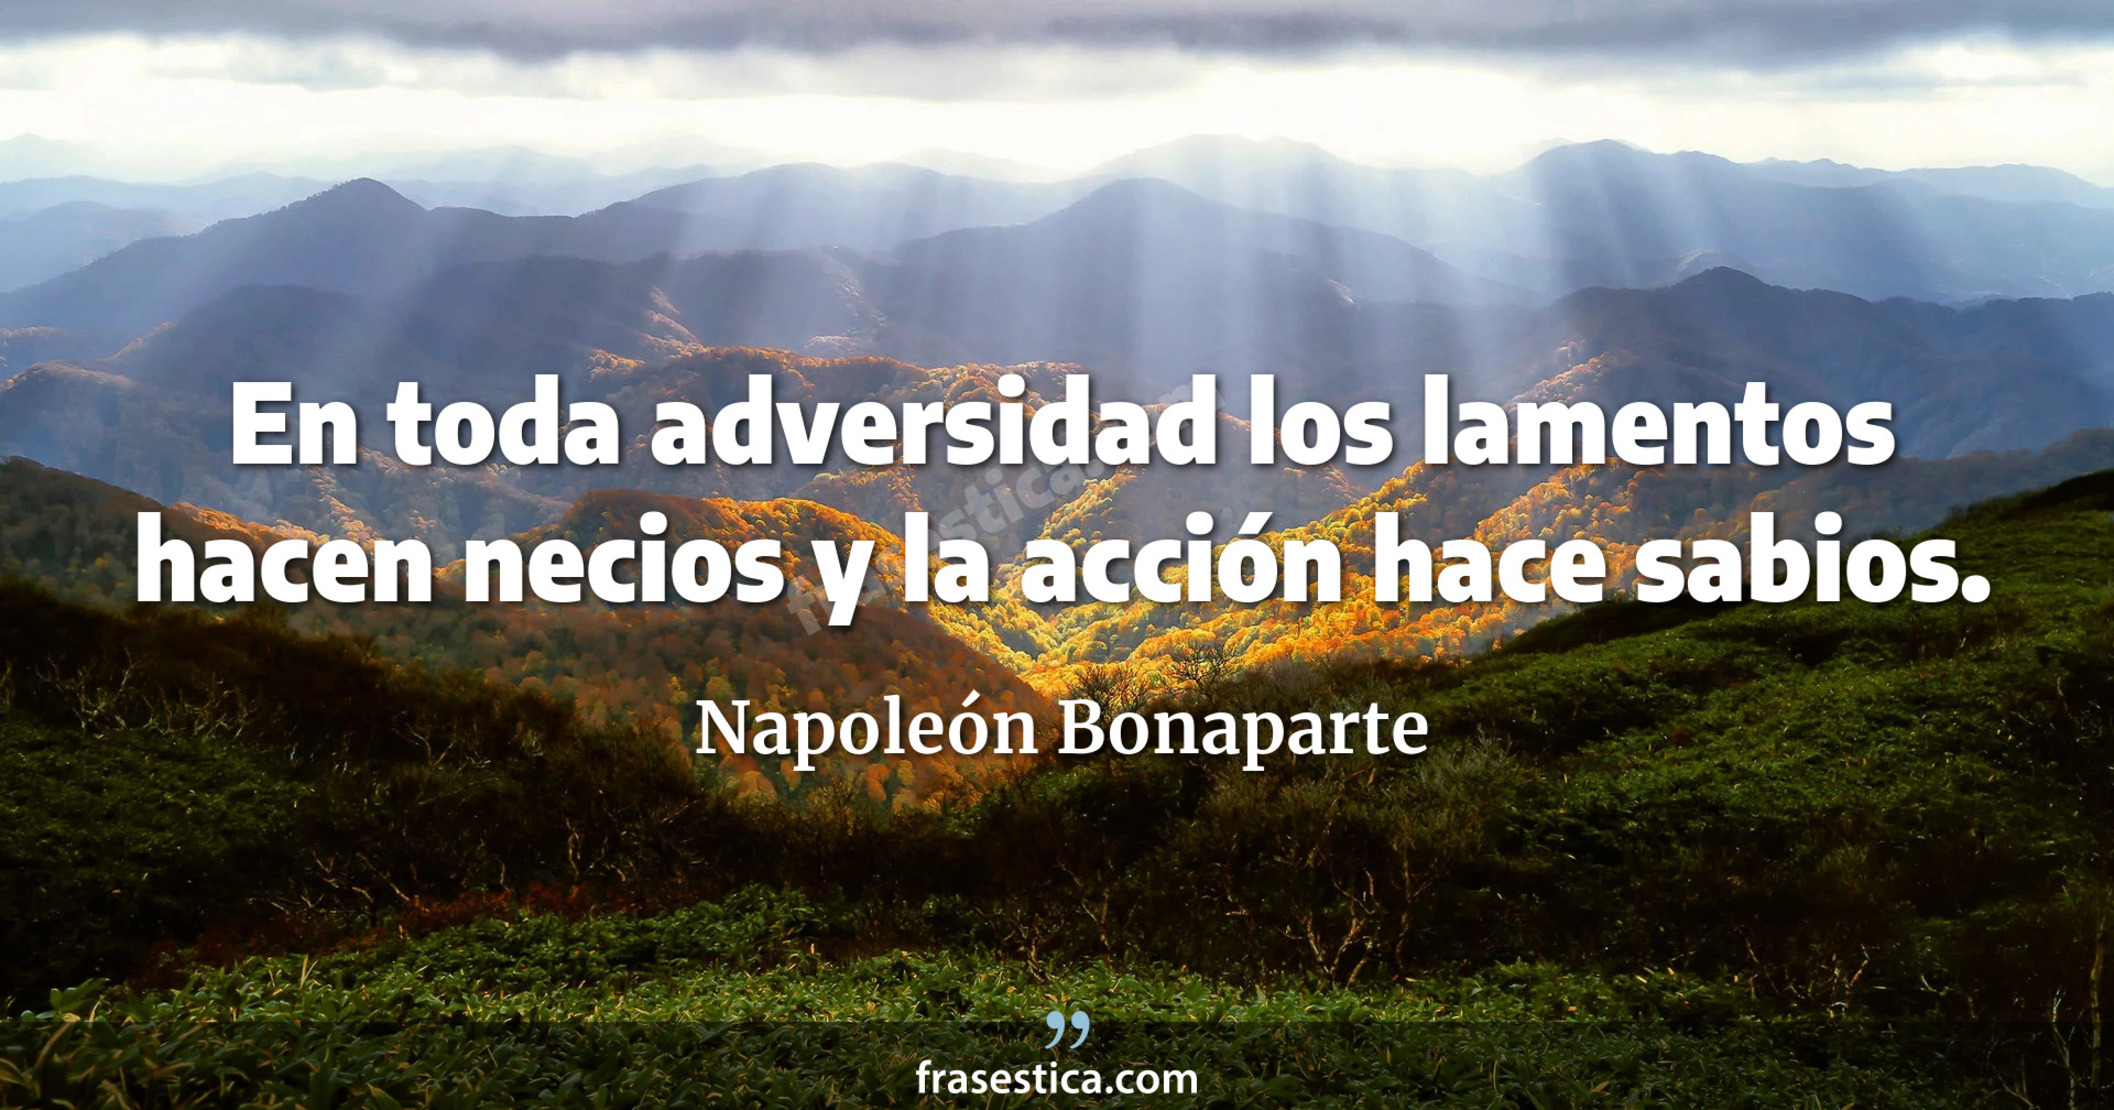 En toda adversidad los lamentos hacen necios y la acción hace sabios. - Napoleón Bonaparte